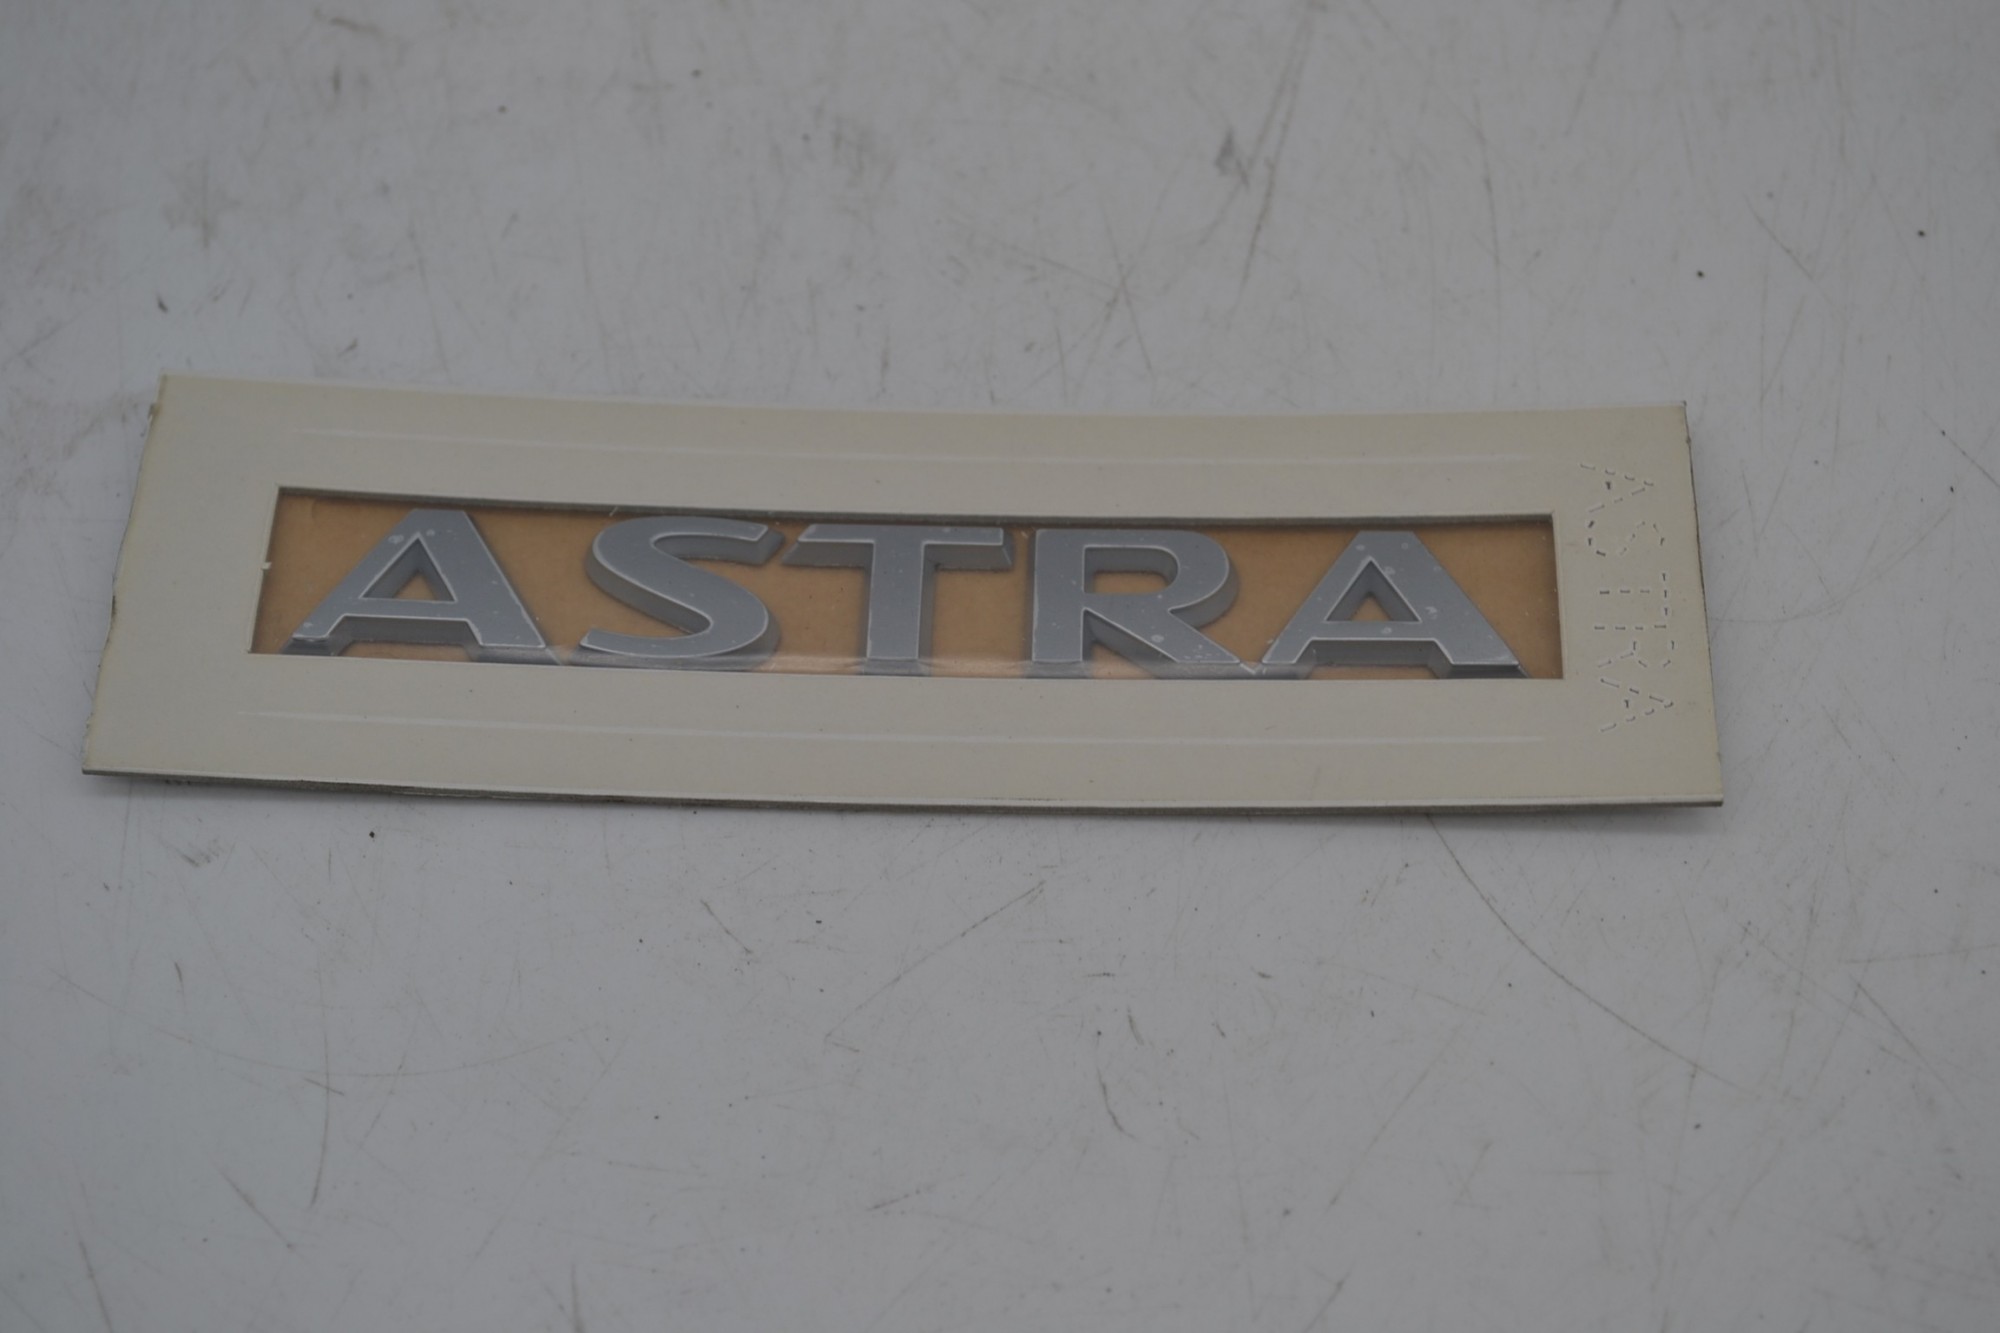 Stemma logo ASTRA Opel Astra Dal 2004 al 2011 Cod 93179472  1651824013067